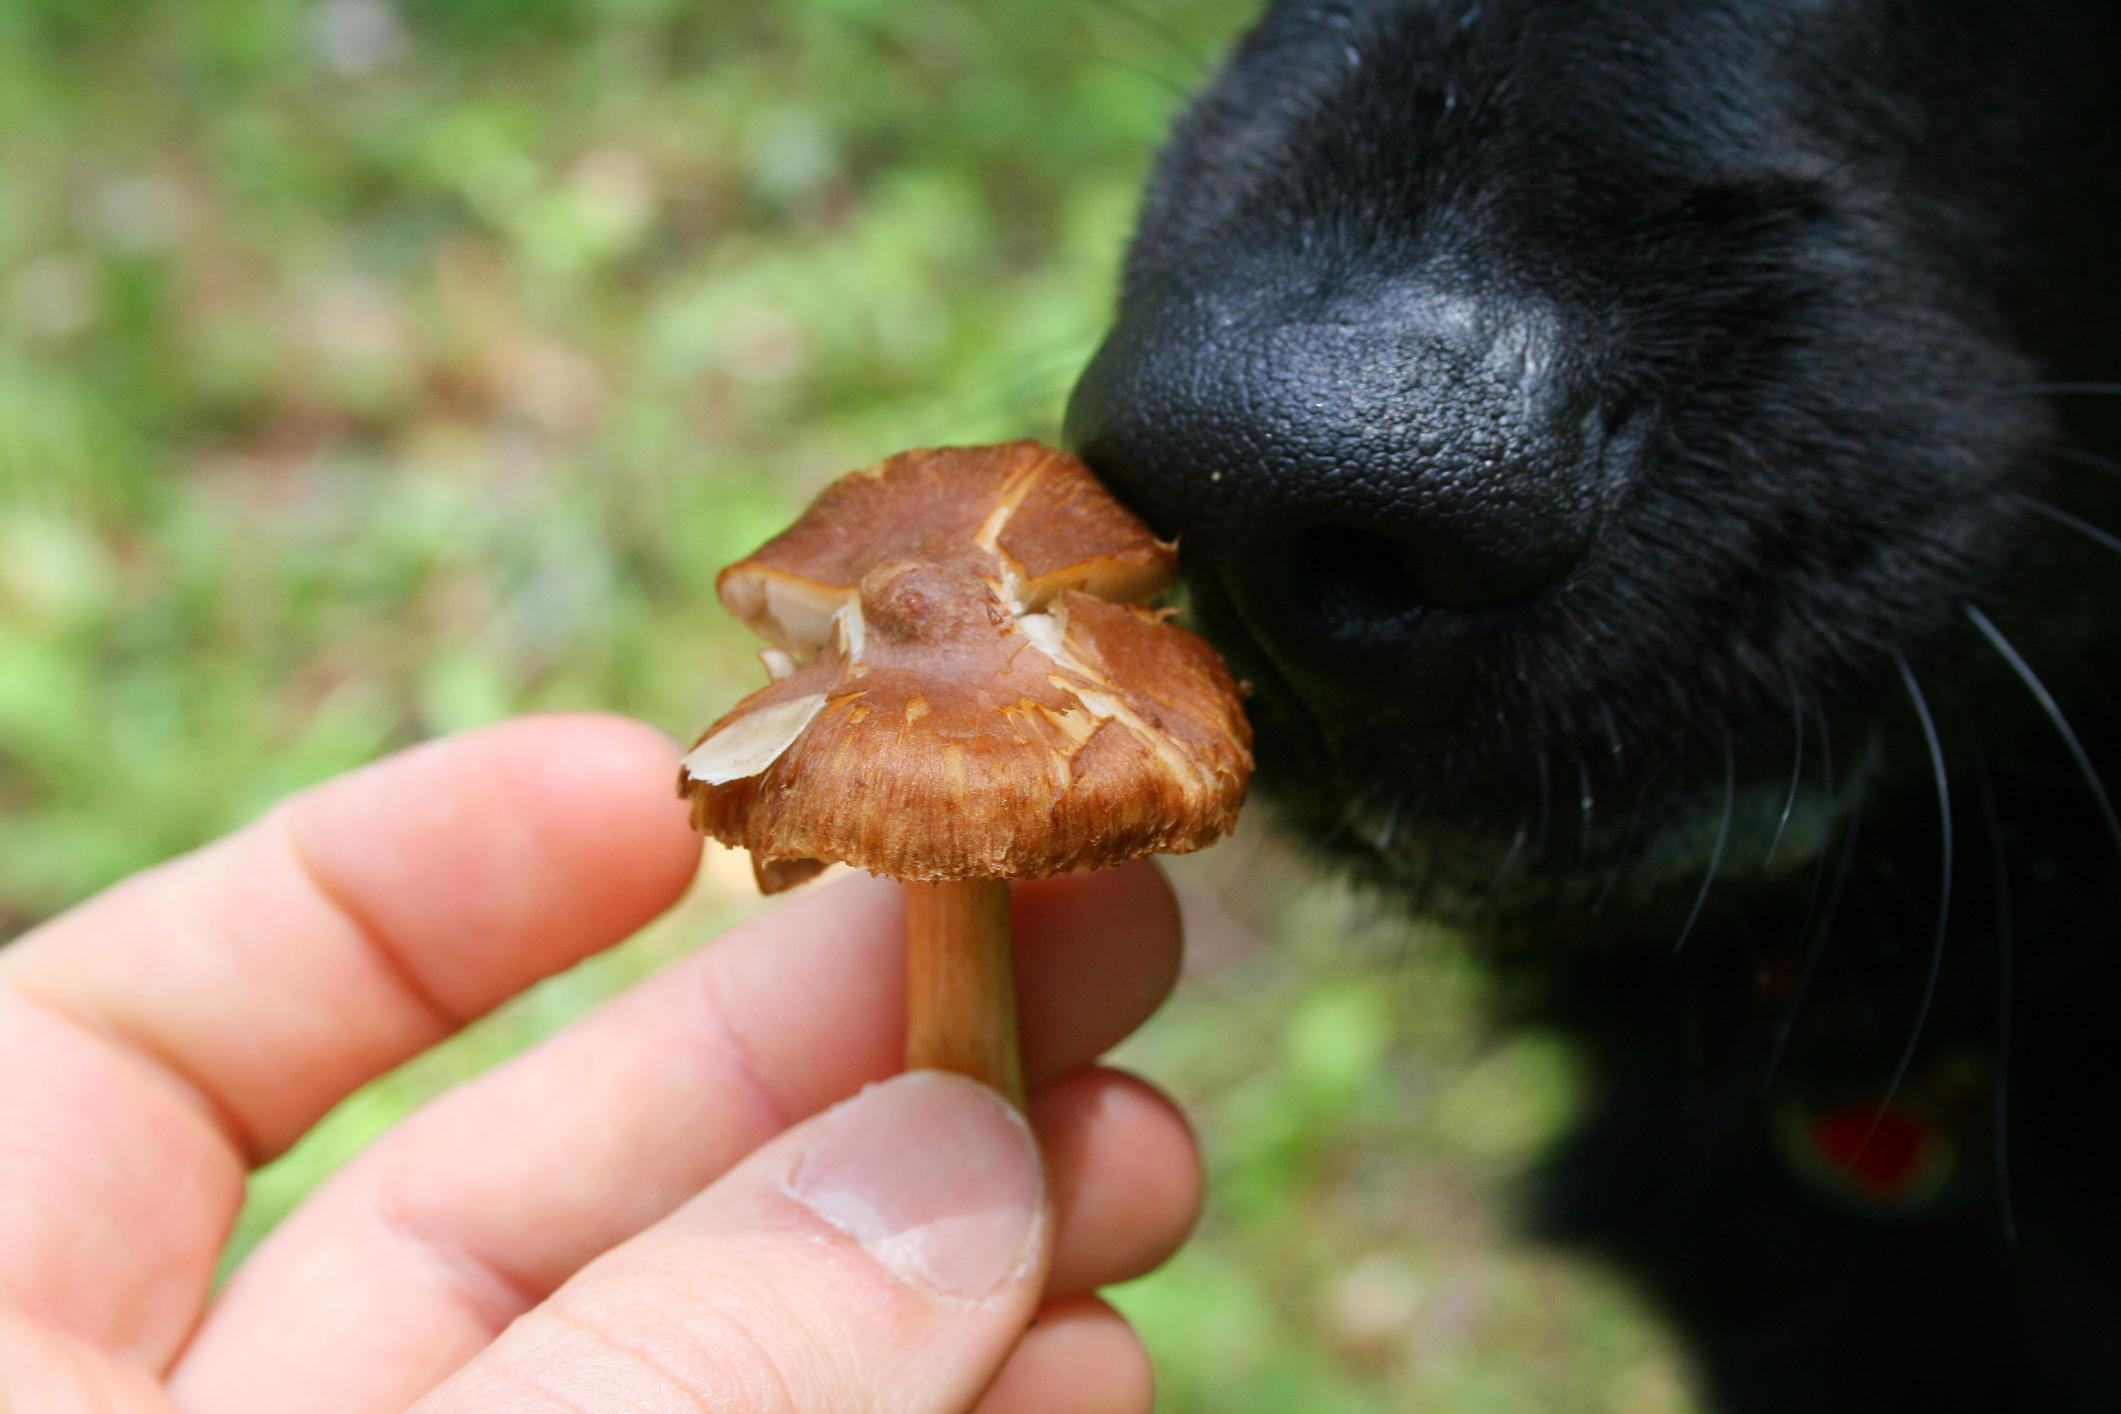 ¿Los perros pueden comer champiñones?